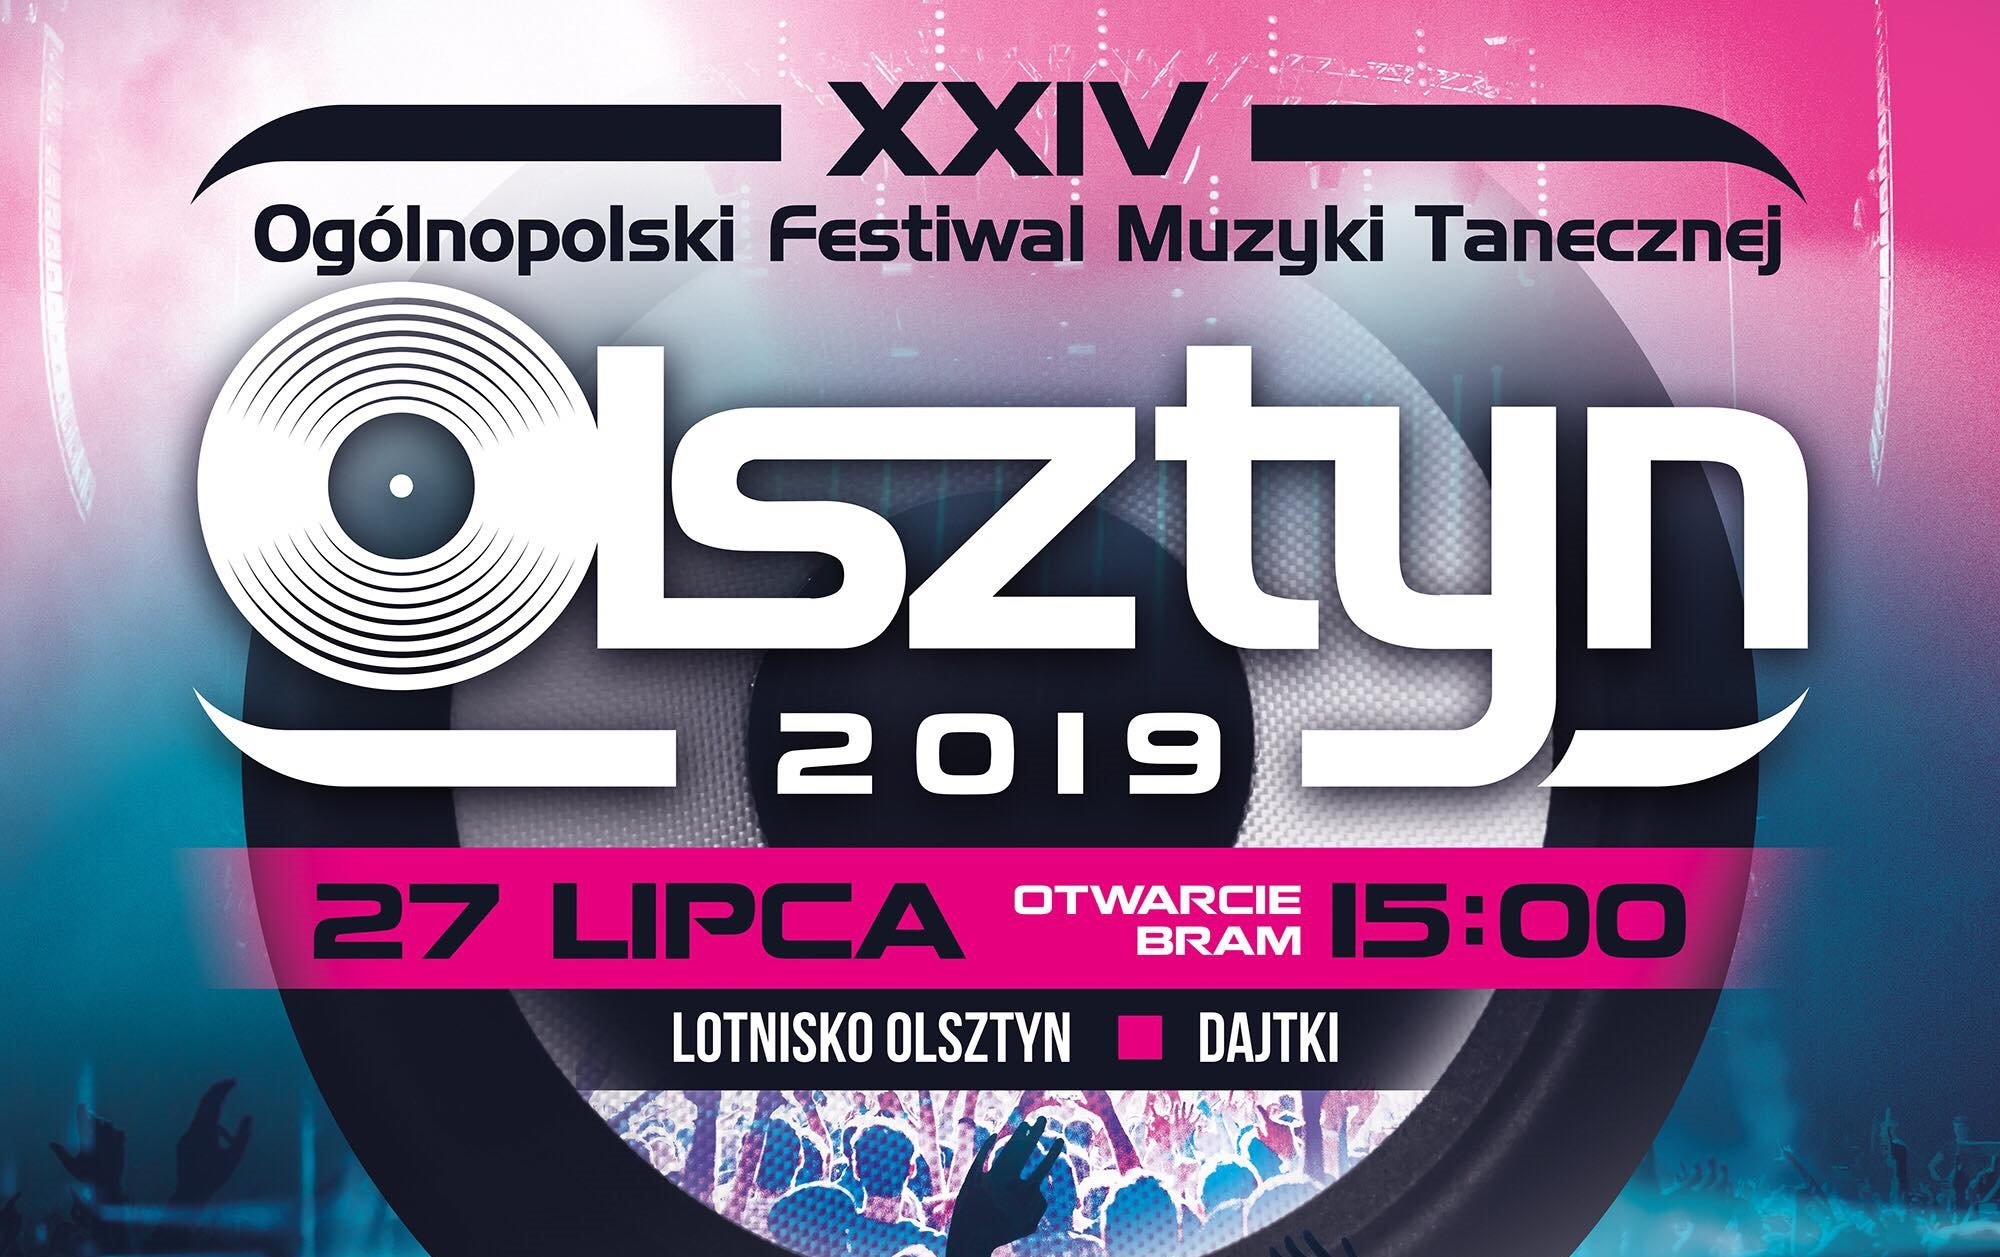 Ogólnopolski Festiwal Muzyki Tanecznej - Olsztyn 2019 - Bilety, transmisja tv, lista zespołów